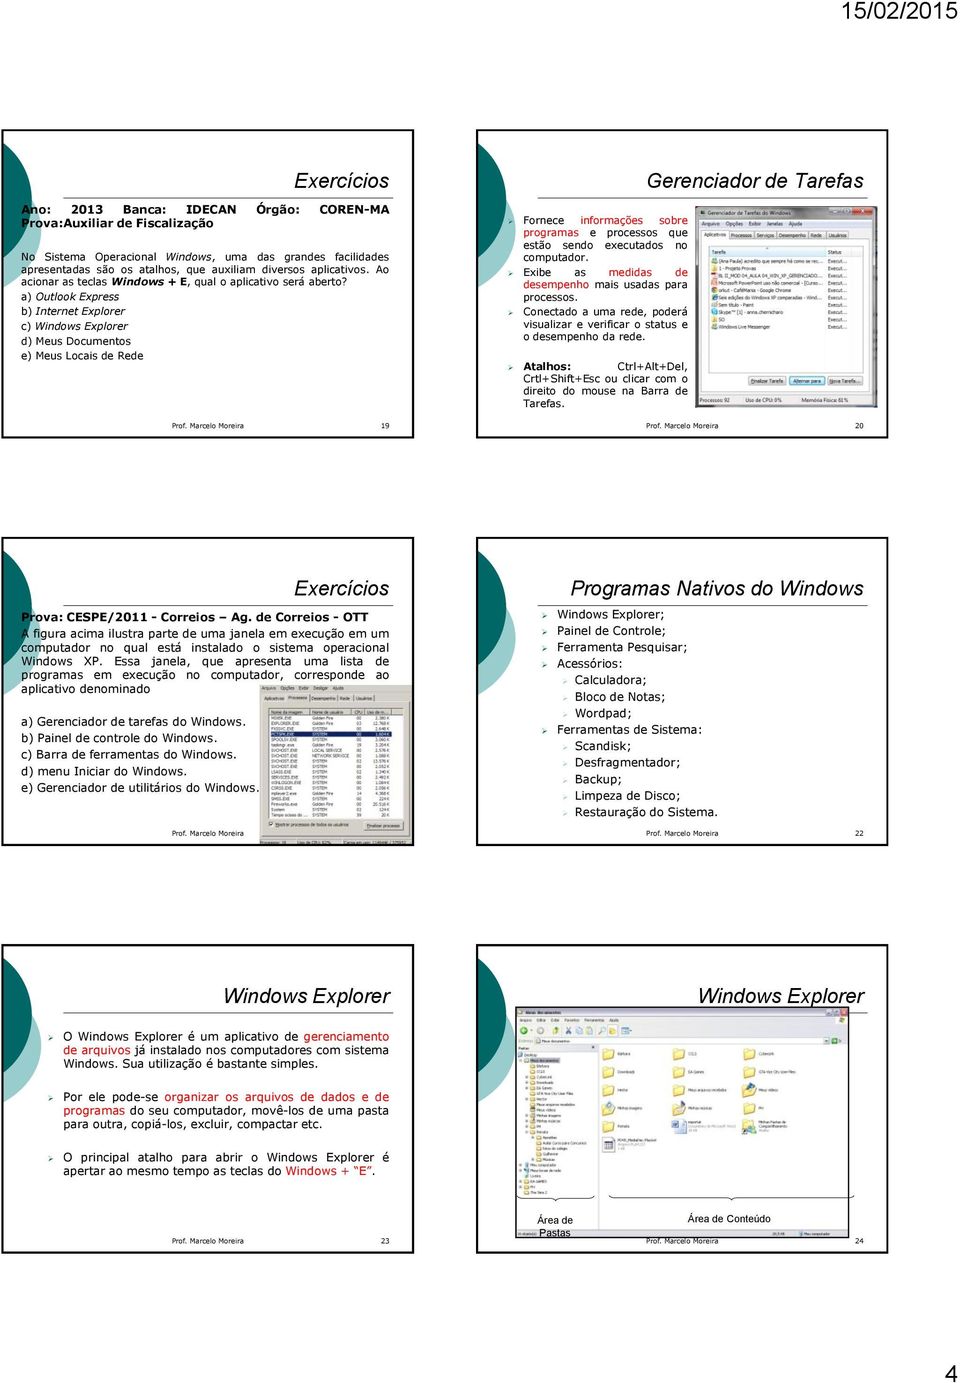 a) Outlook Express b) Internet Explorer c) Windows Explorer d) Meus Documentos e) Meus Locais de Rede Fornece informações sobre programas e processos que estão sendo executados no computador.